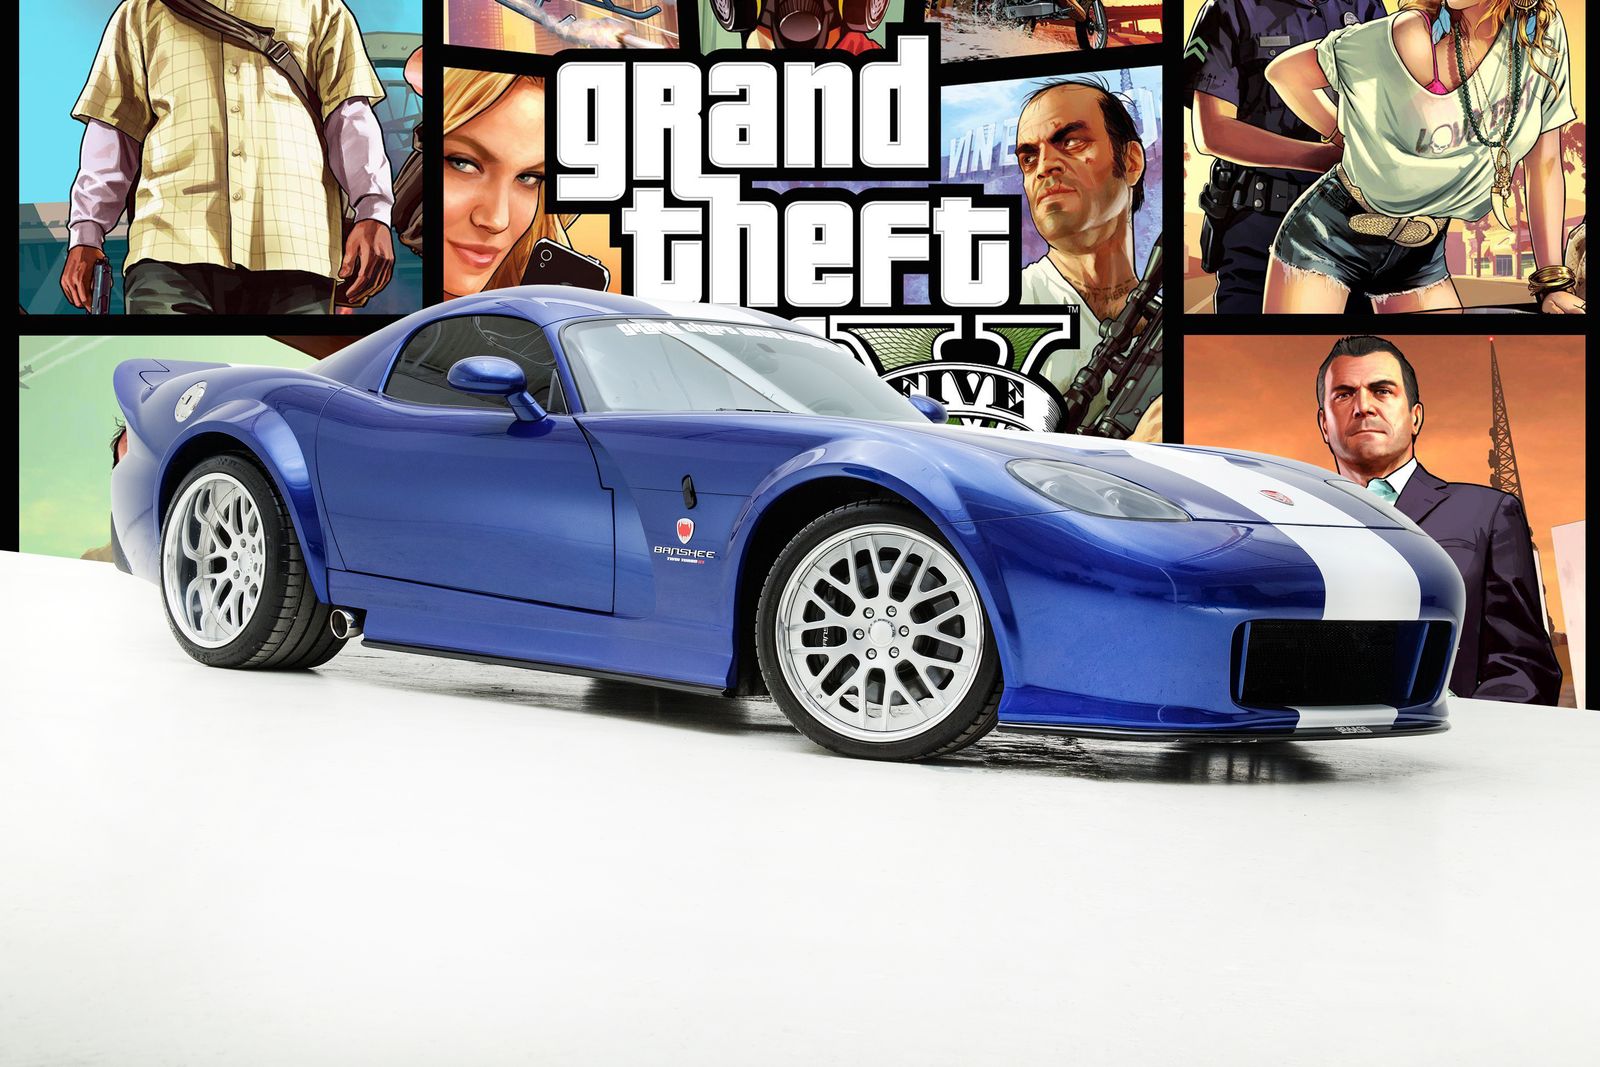 GTA 5 – realna wersja samochodu Banshee sprzedana